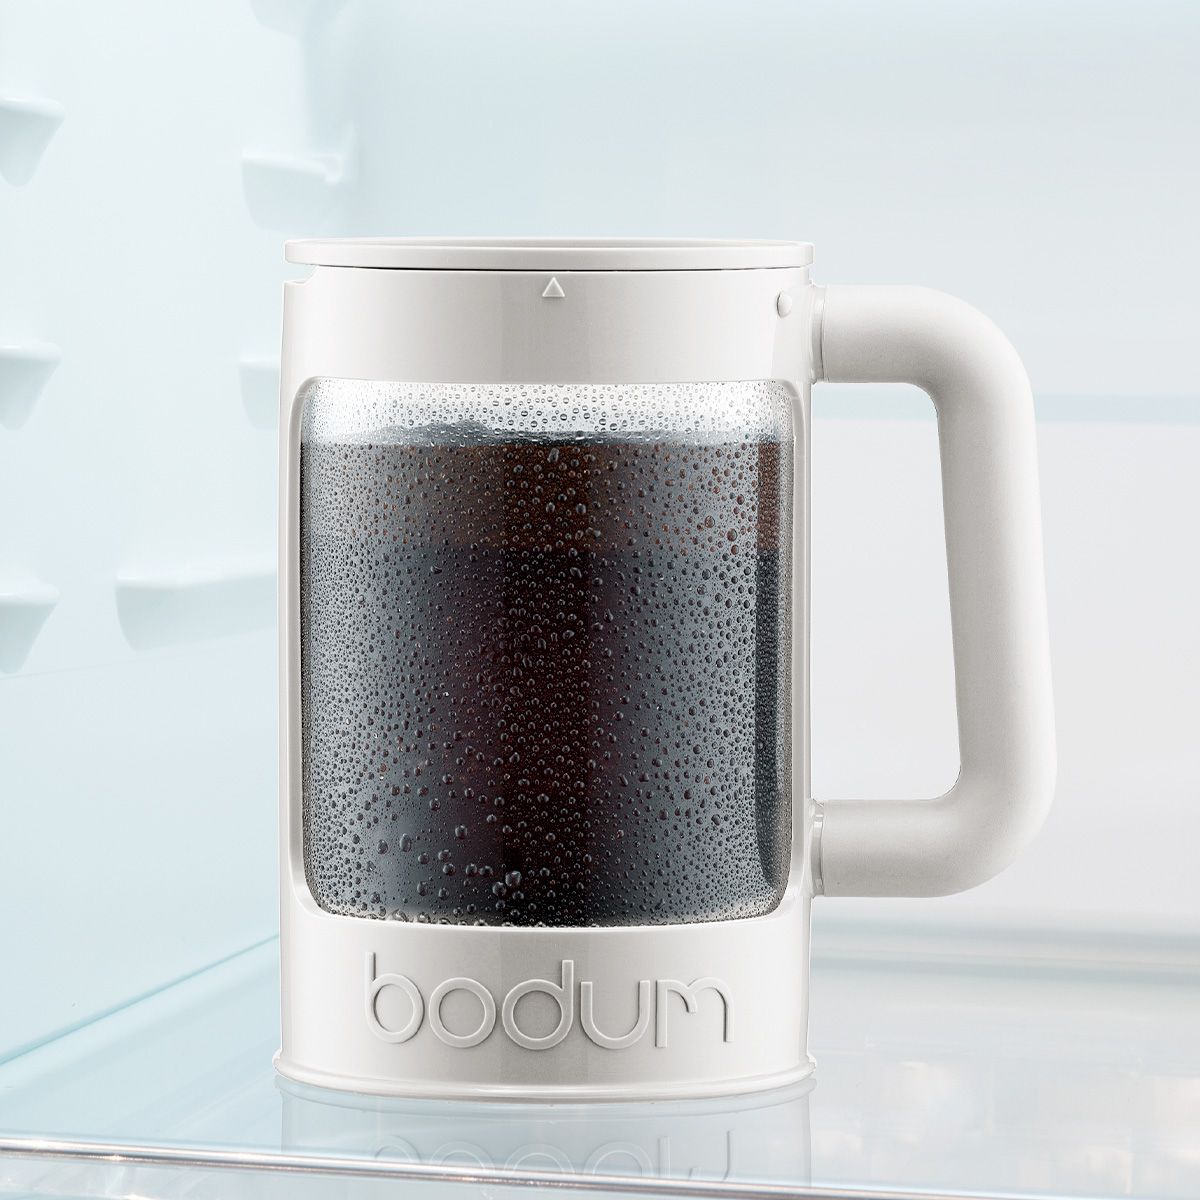 Bodum Bean Set Iced Coffee Maker med ytterligare lockkräm, 12 koppar